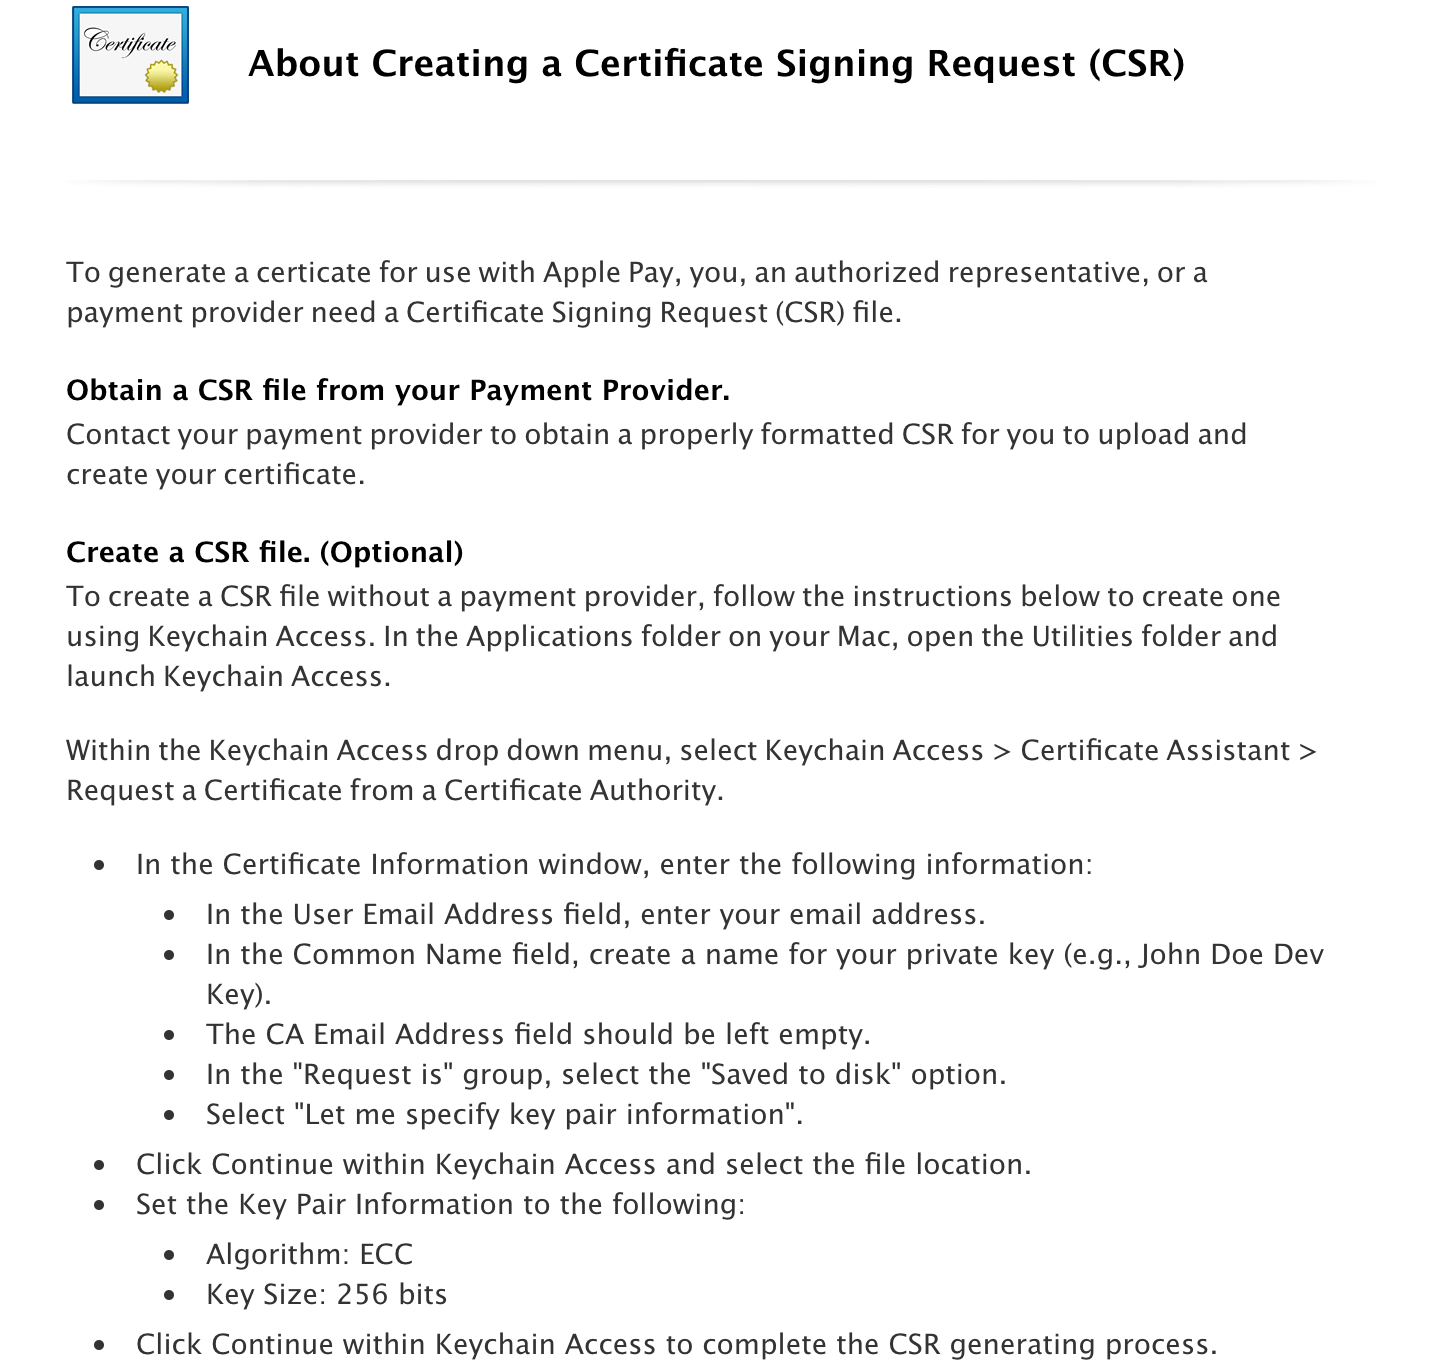 Création d’une demande de signature de certificat (CSR)